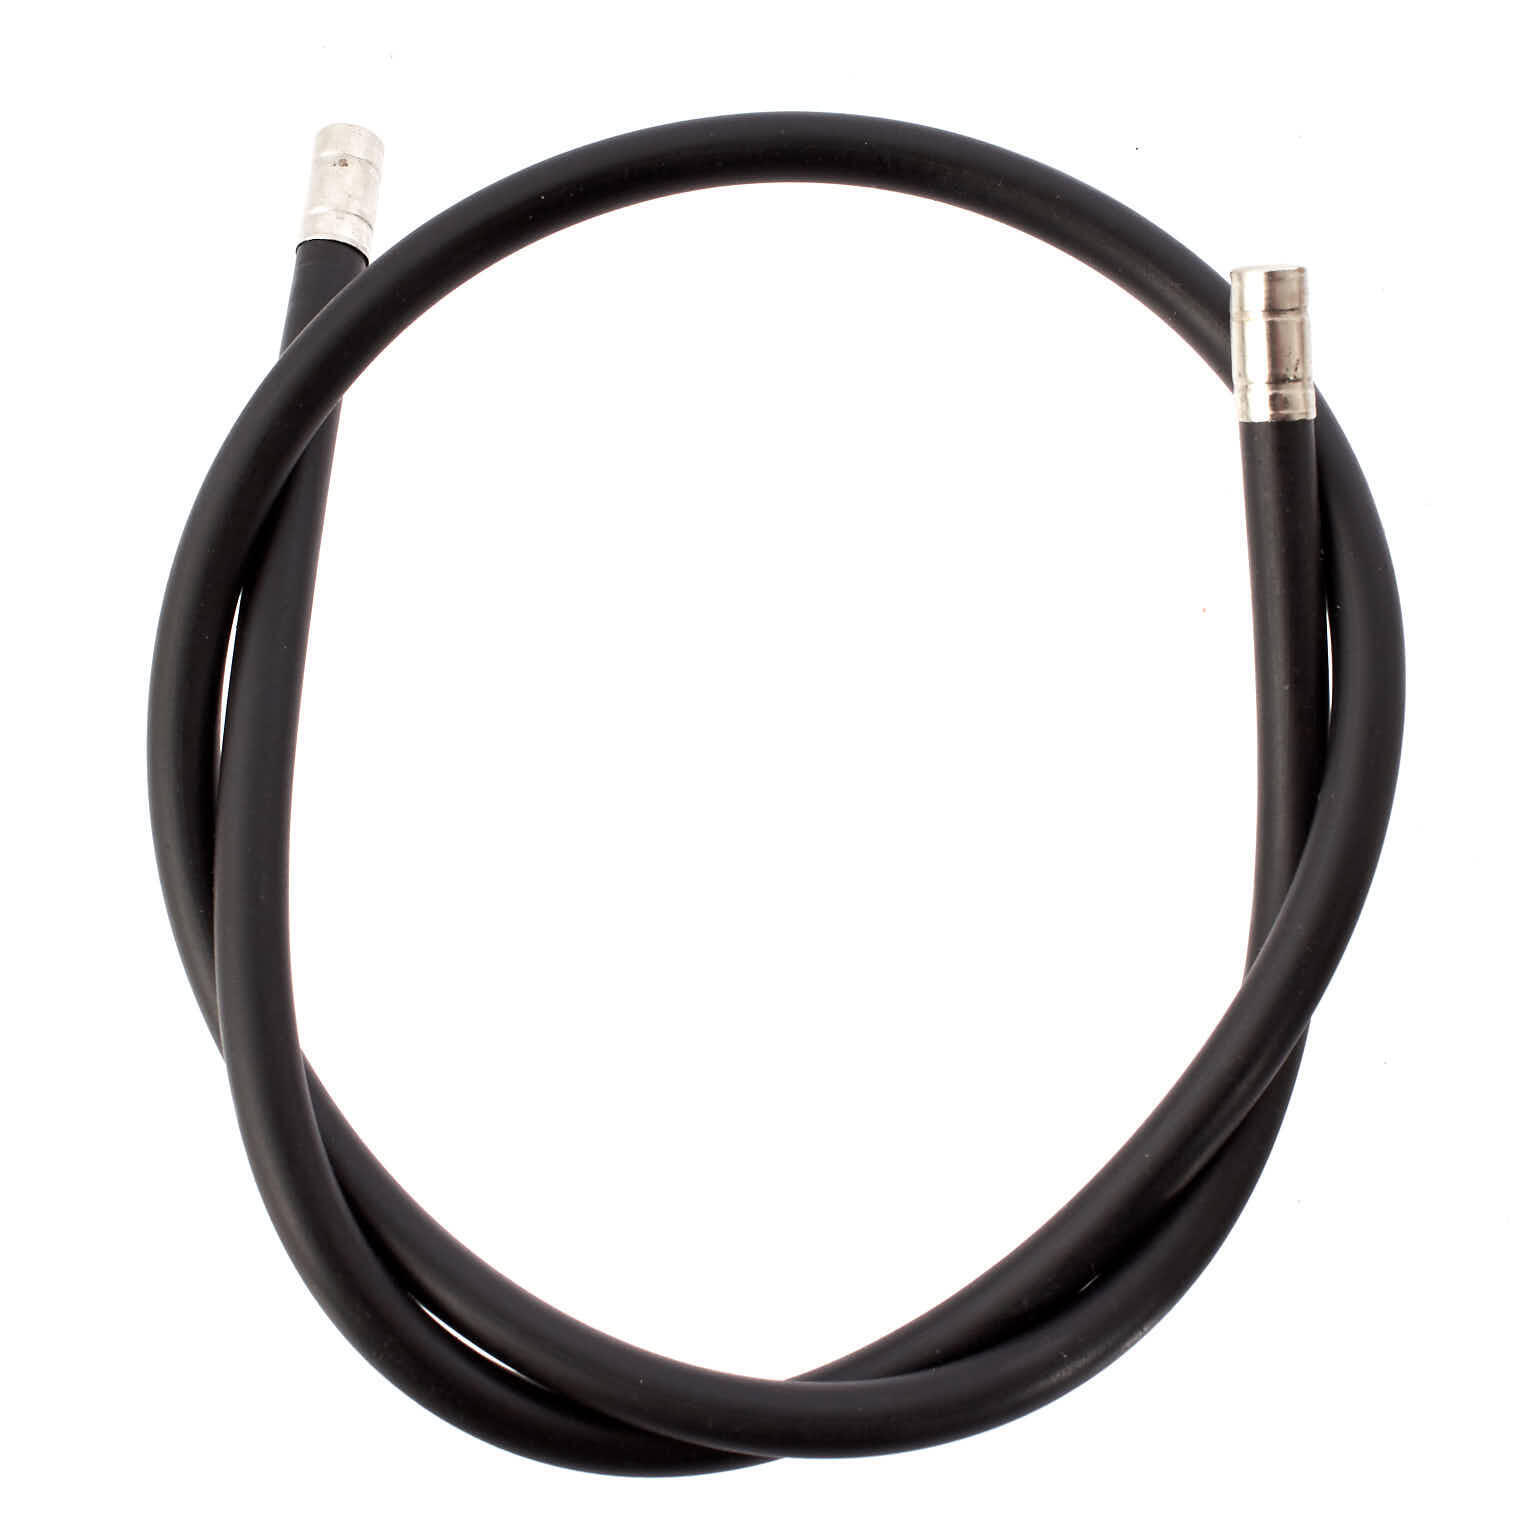 Кабельная муфта AFFIX, черный пэт премиум кабельная муфта 5 м 6 8 10 мм dia расширяемая плетеная пэт премиум кабельная муфта черная сертификация rohs деталь для 3d принтера